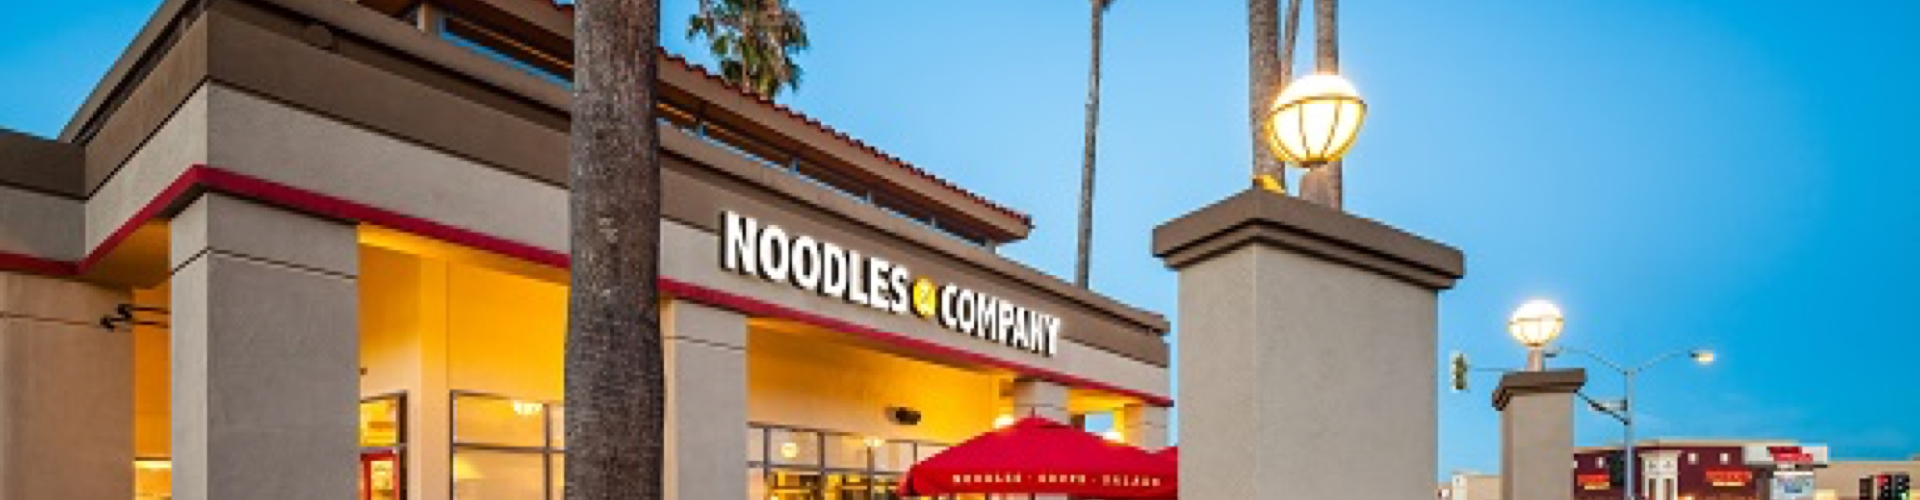 noodles-header